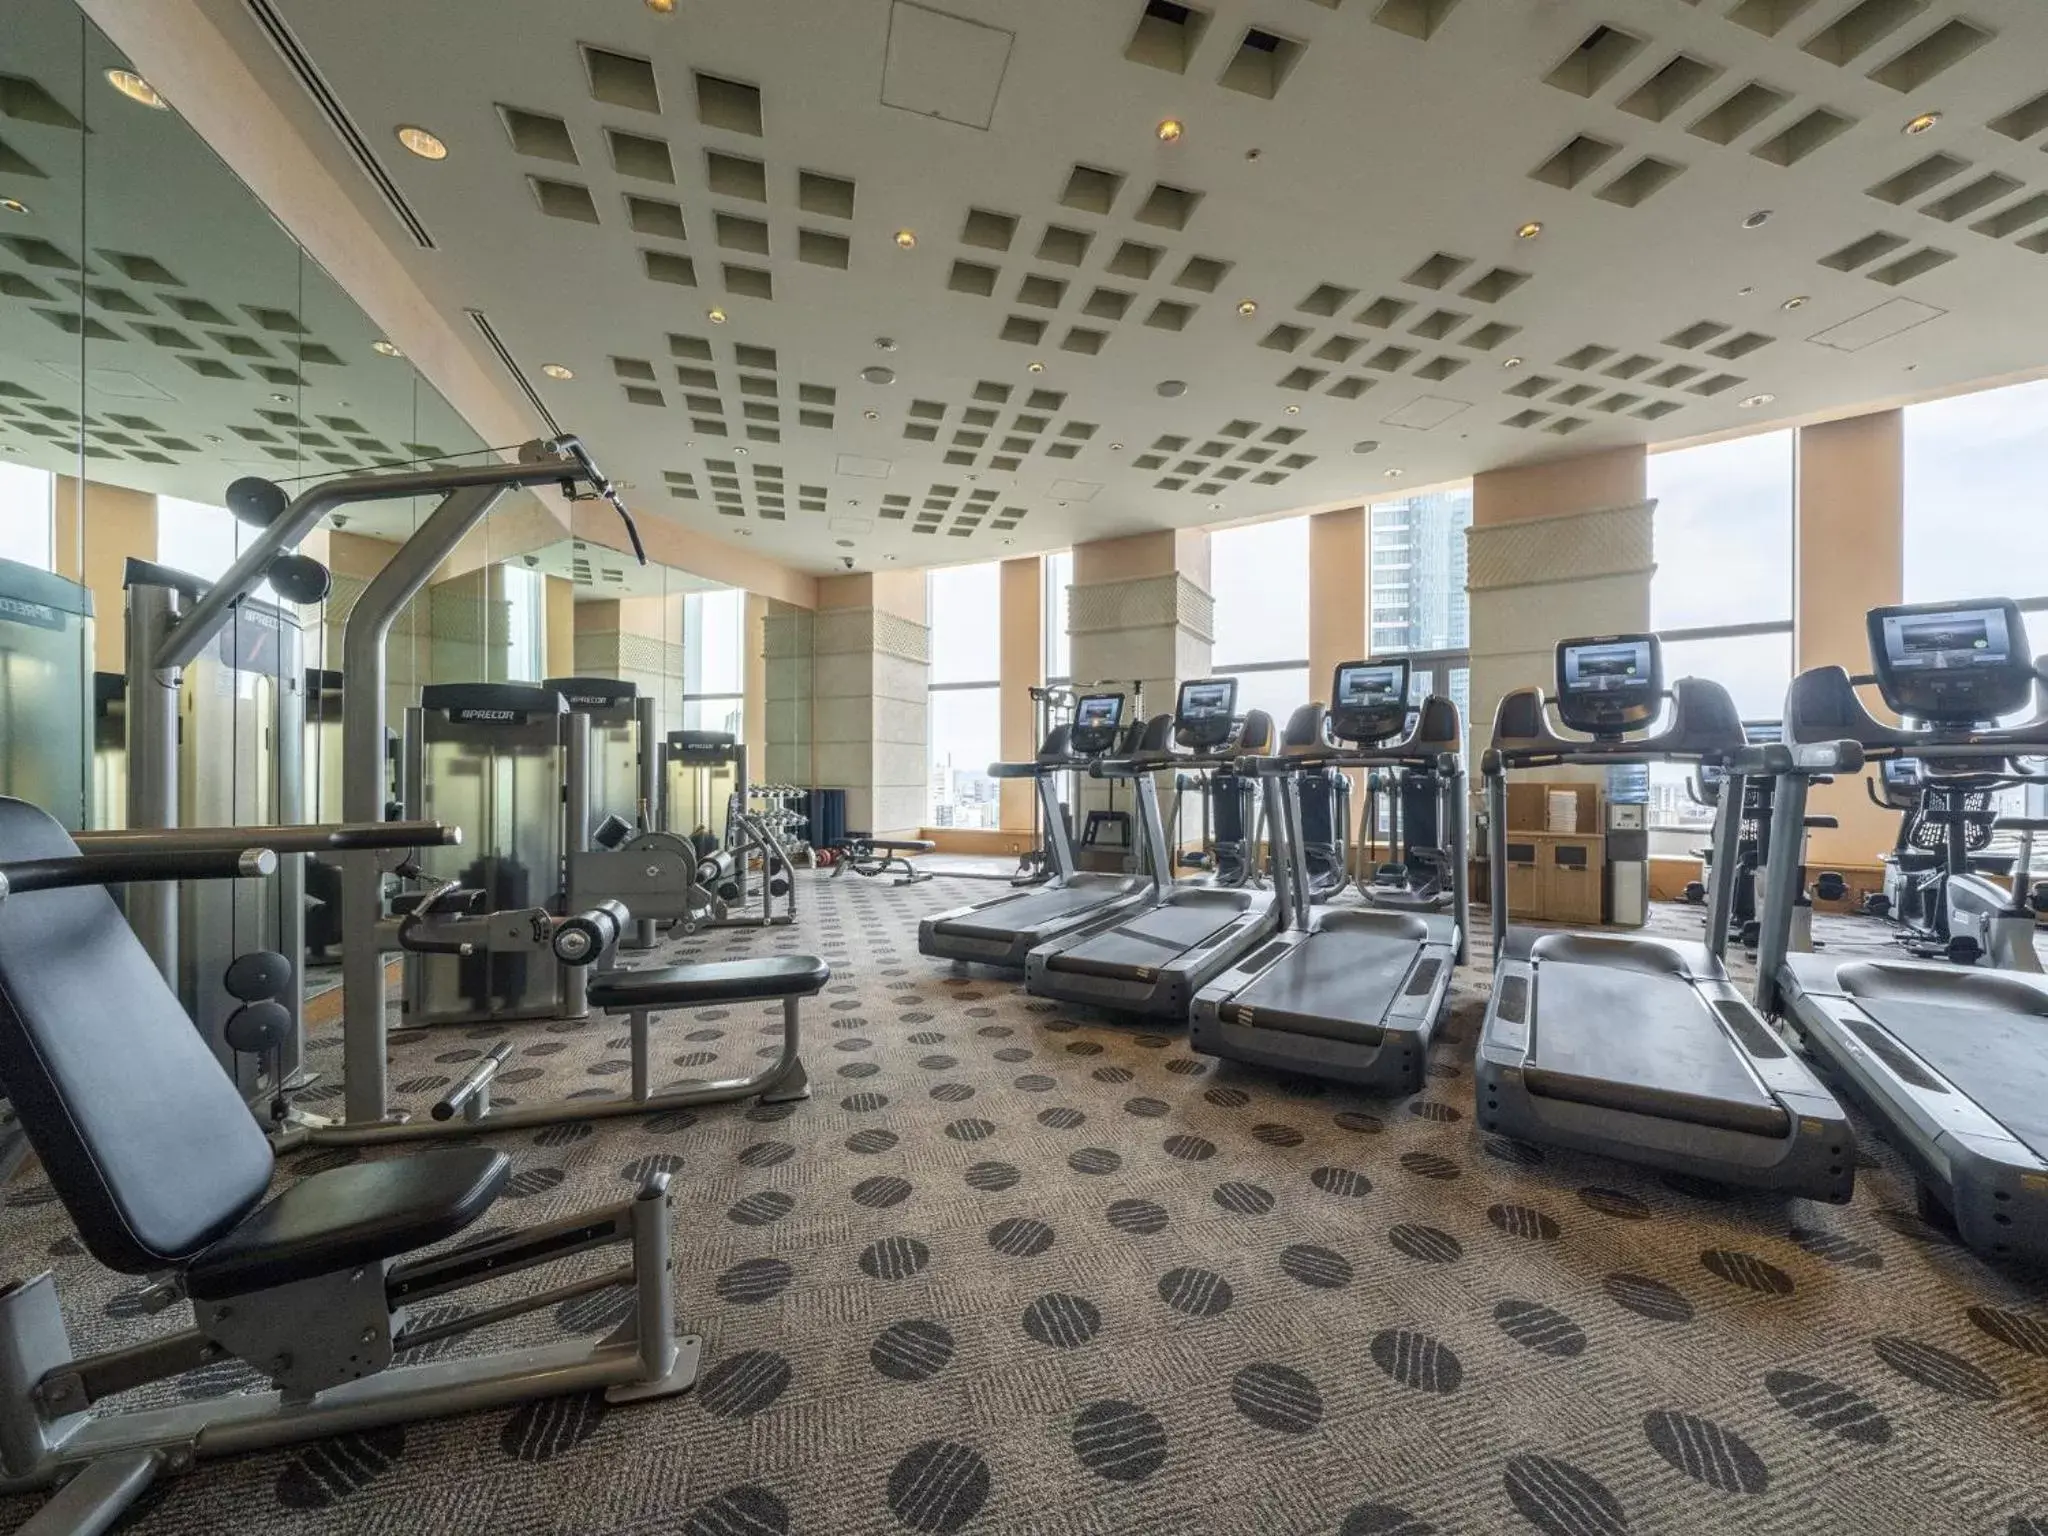 Fitness centre/facilities, Fitness Center/Facilities in Nagoya Marriott Associa Hotel